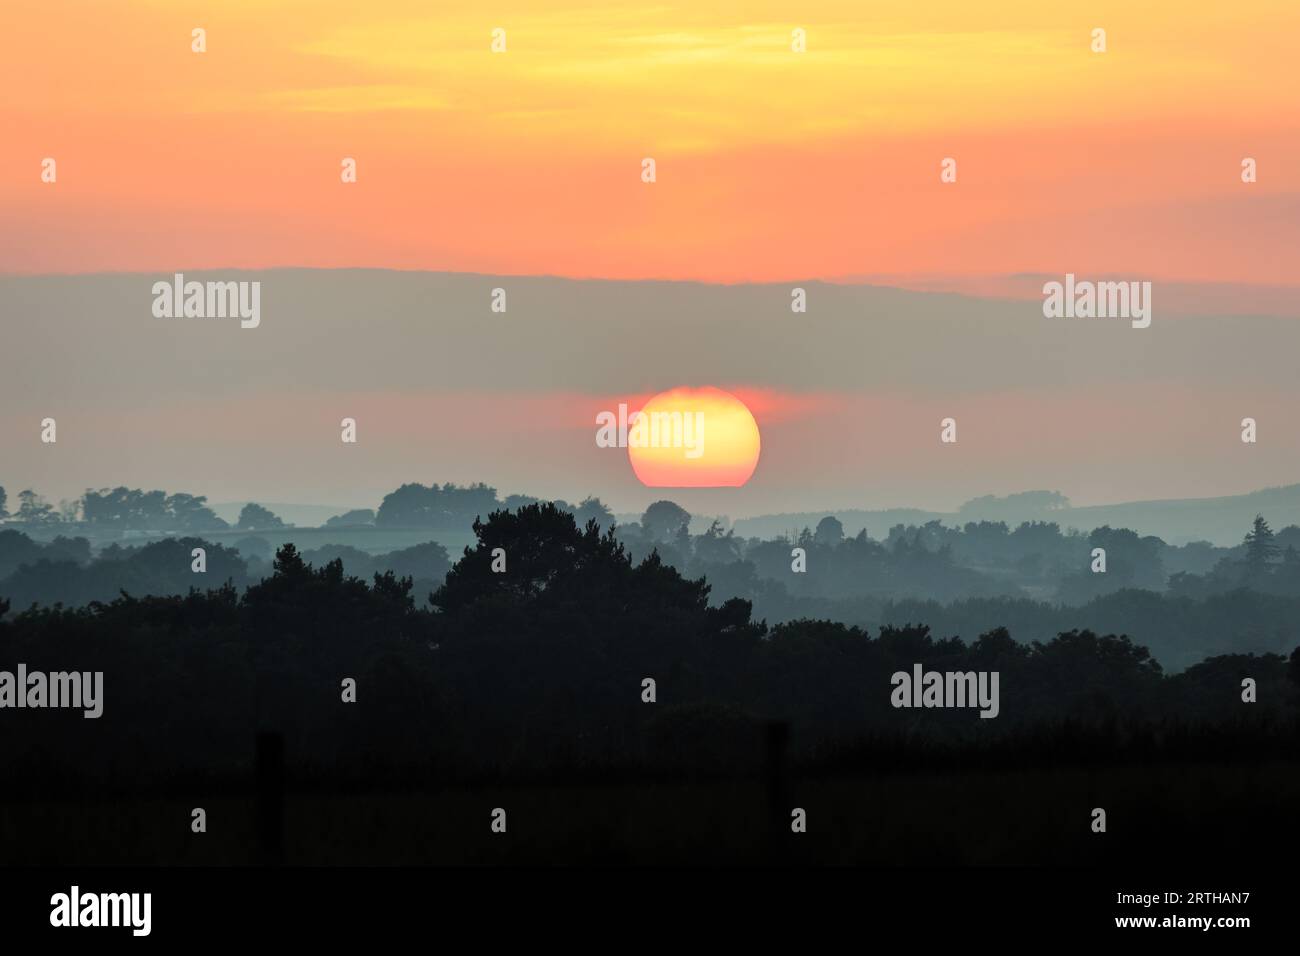 Un tramonto spettacolare e colorato sulle Durham Dales, creato dalla polvere sahariana nell'atmosfera alta, Teesdale, County Durham, Regno Unito Foto Stock